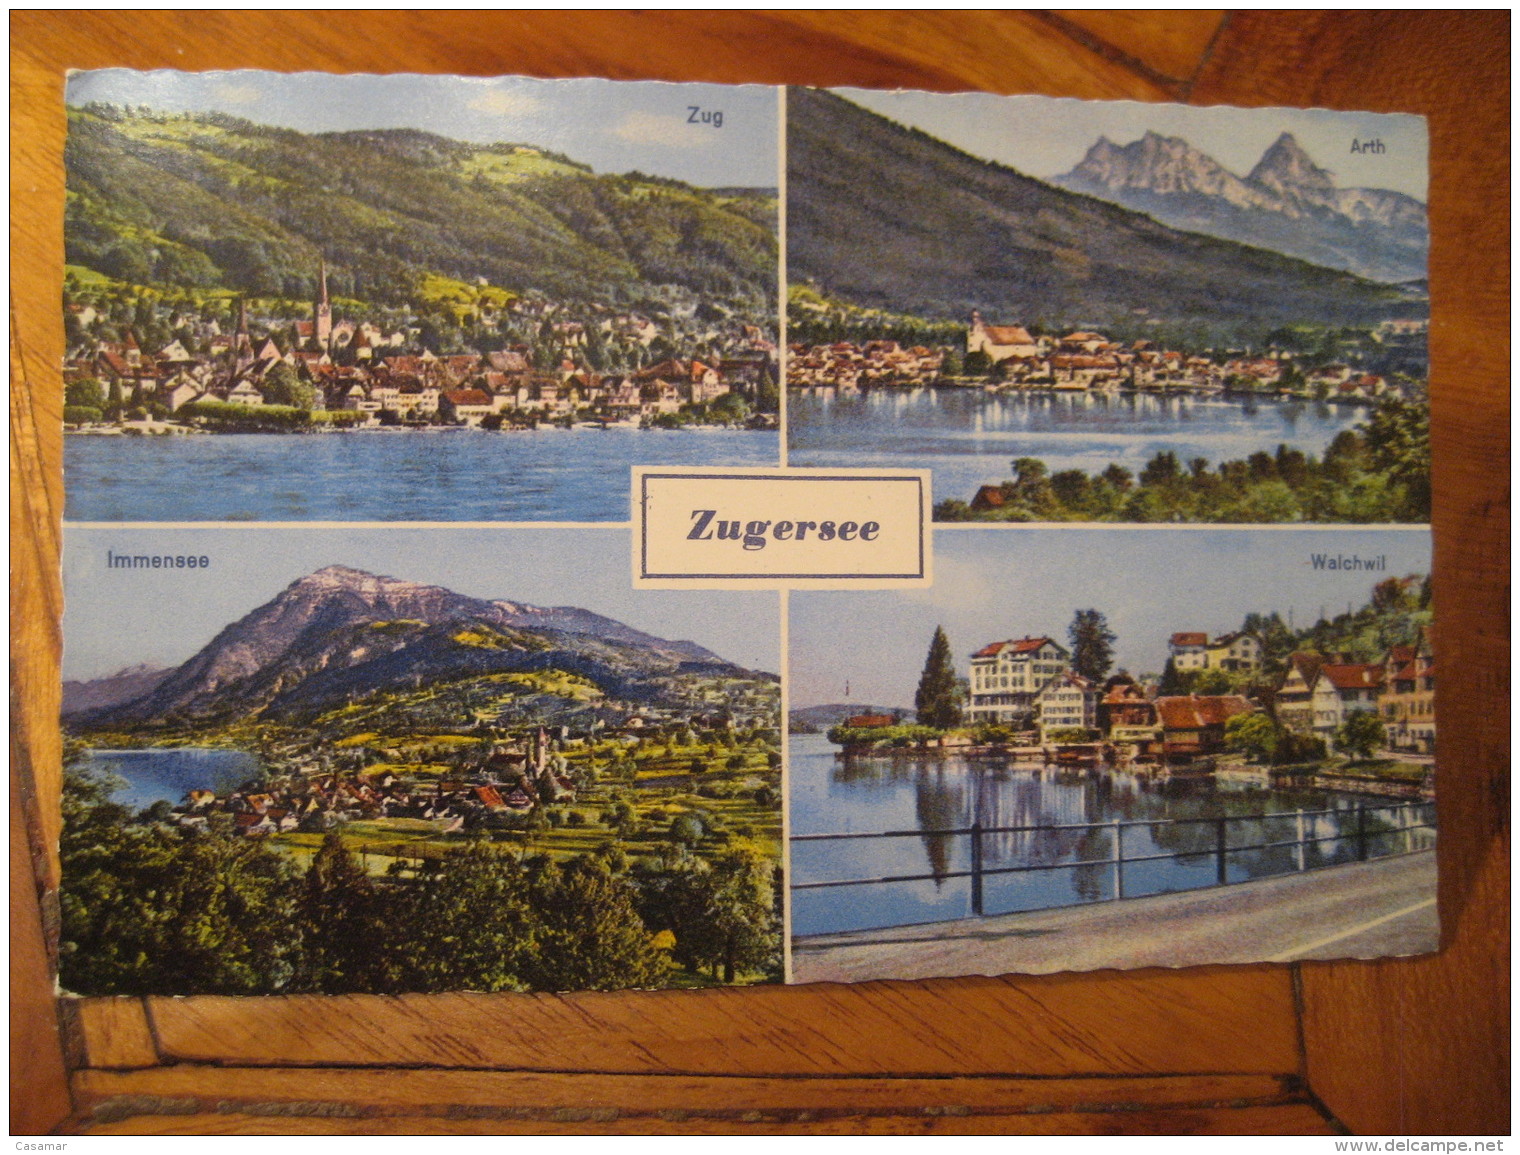 ZUGERSEE Zuger See Lake Arth Alchwill Immensee Post Card ZUG Switzerland - Zugo